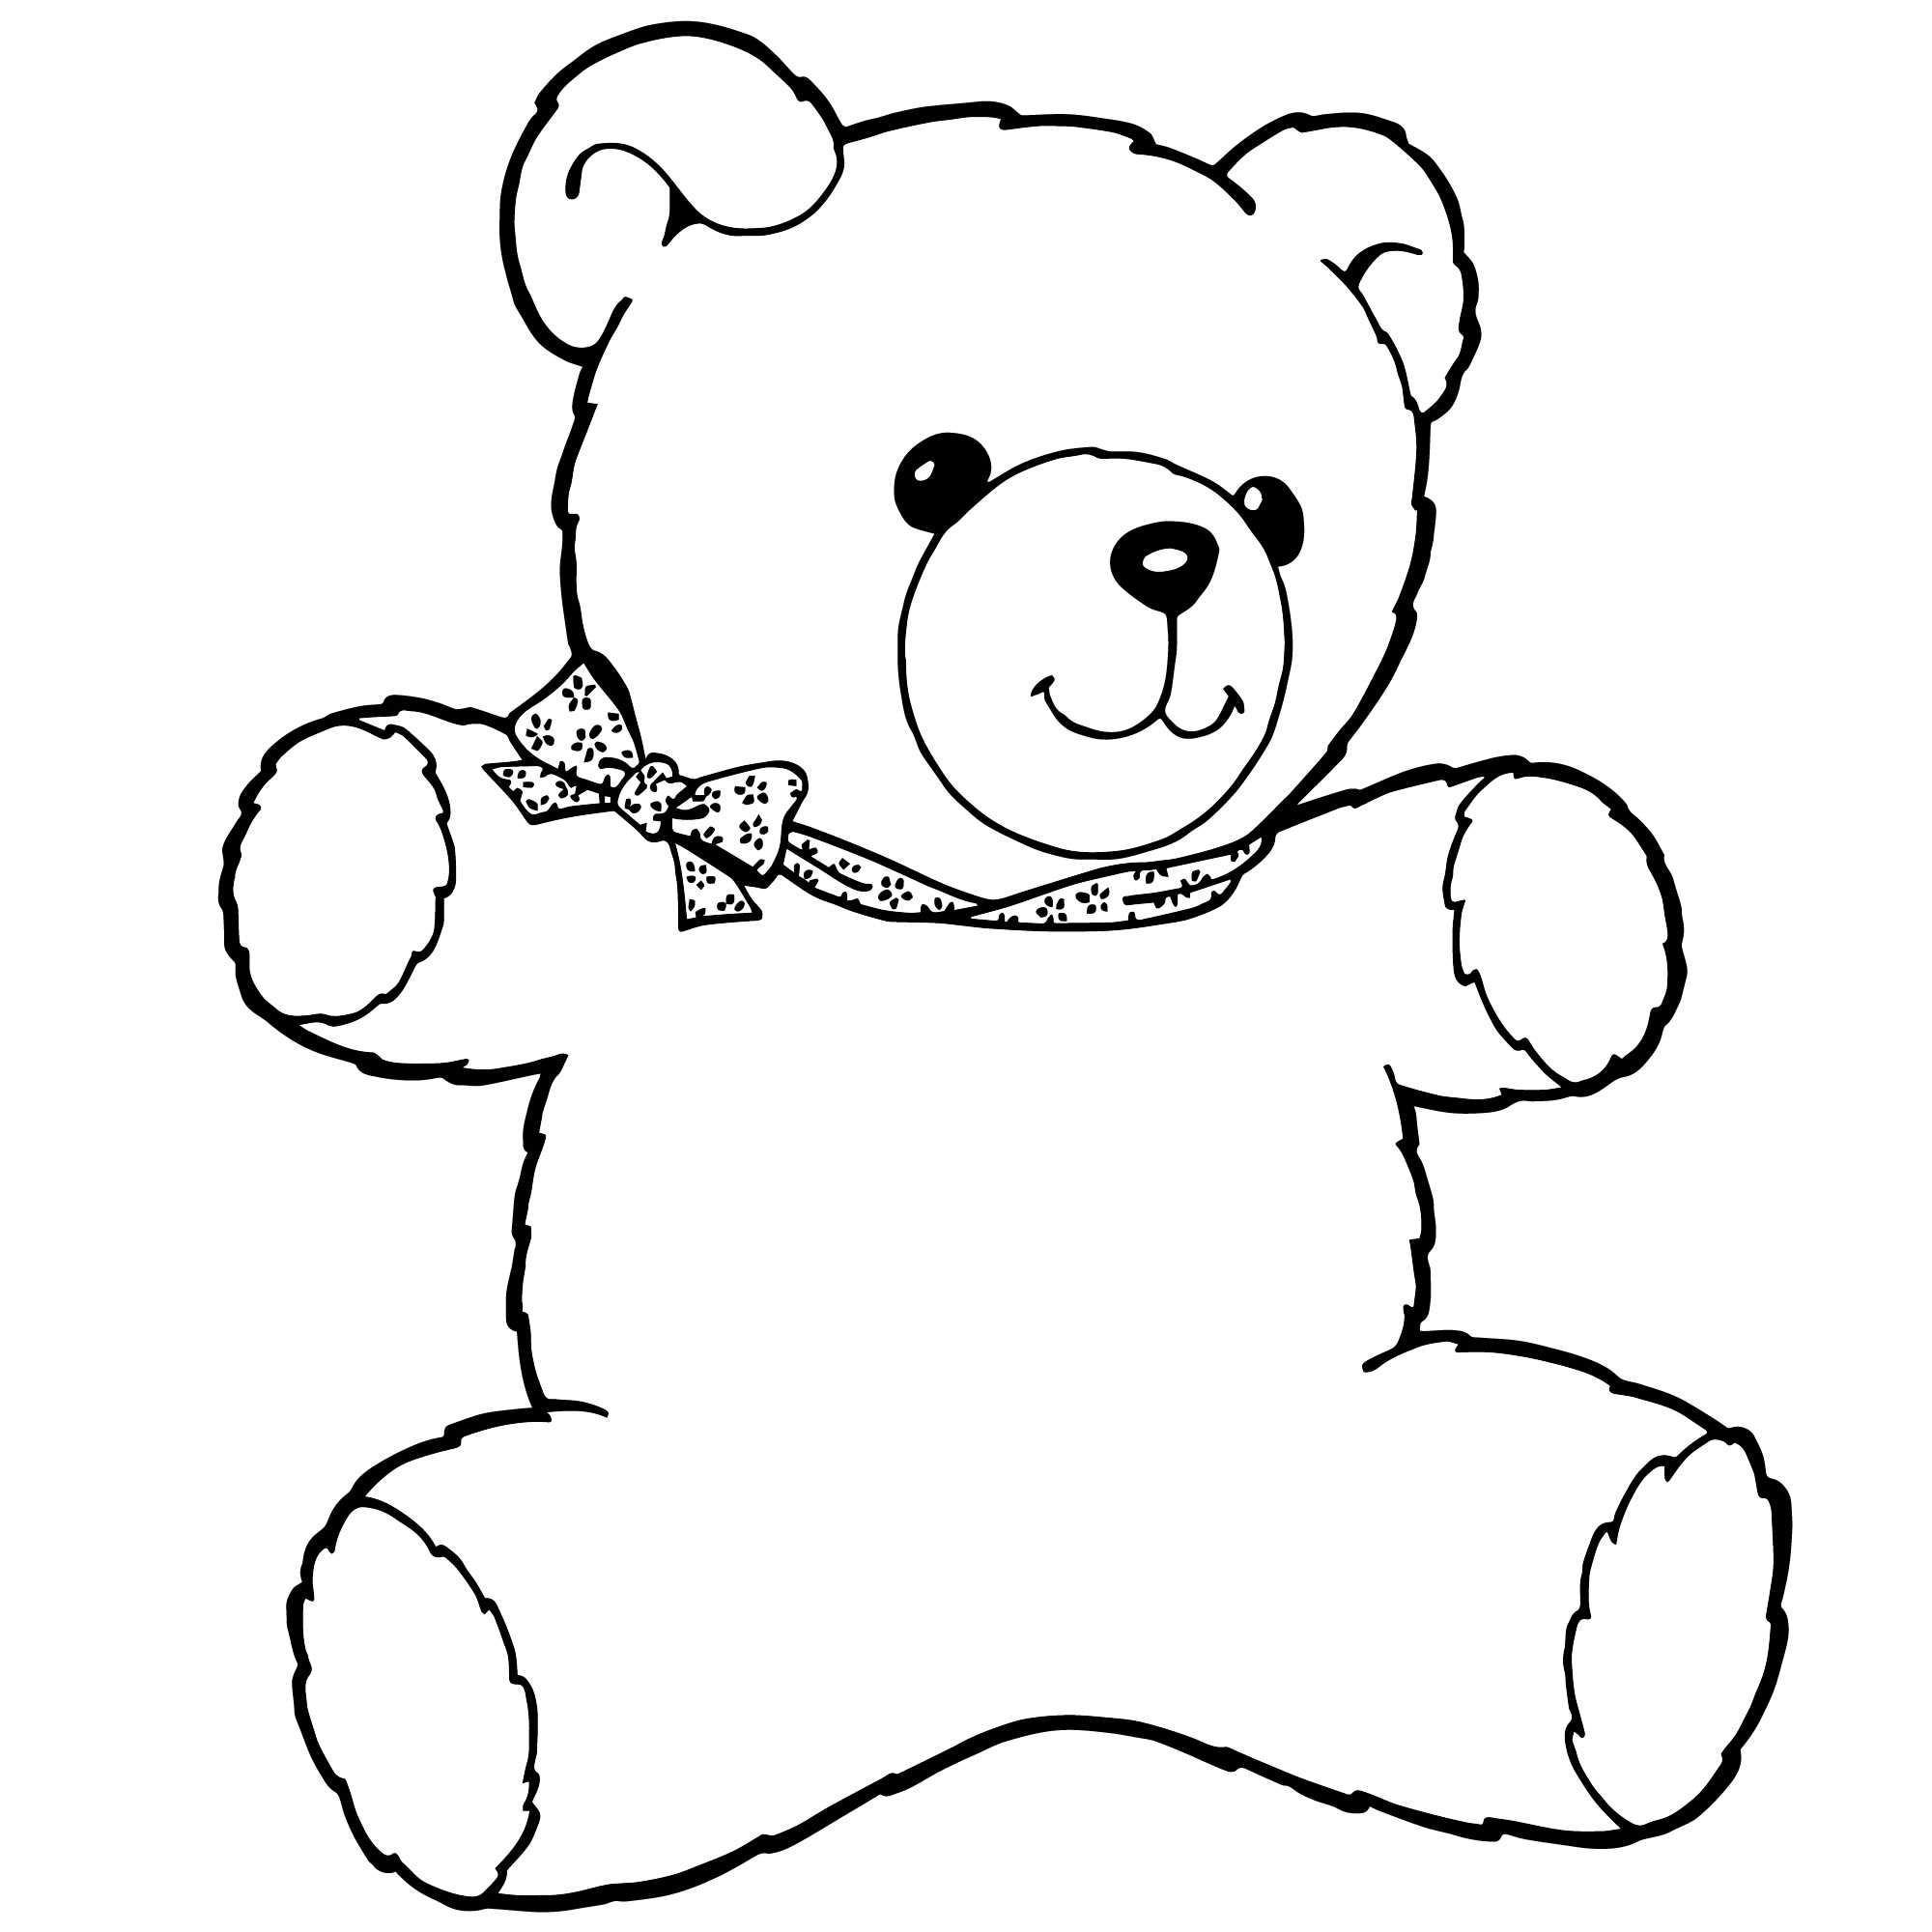 Плюшевый медведь раскраска для детей